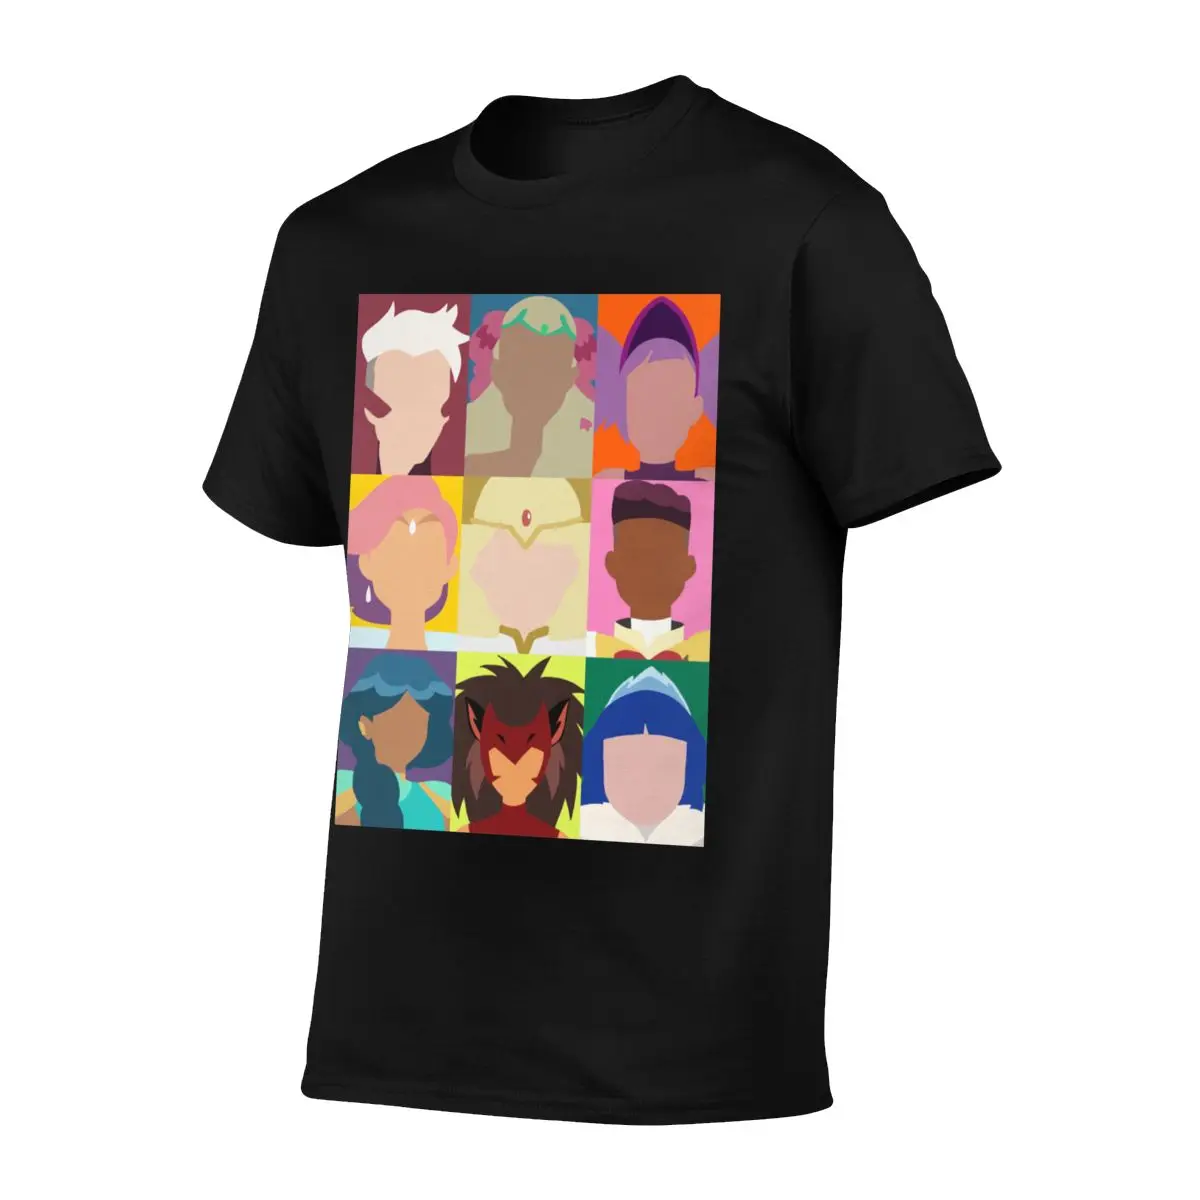 Homens T-Shirt Ela Ra Pop Arte Pura, T-Shirts spop catra arco brilho Original de Algodão de Impressão Camiseta de Mangas Curtas Tees Presente 3XL 4XL 5XL Imagem 2